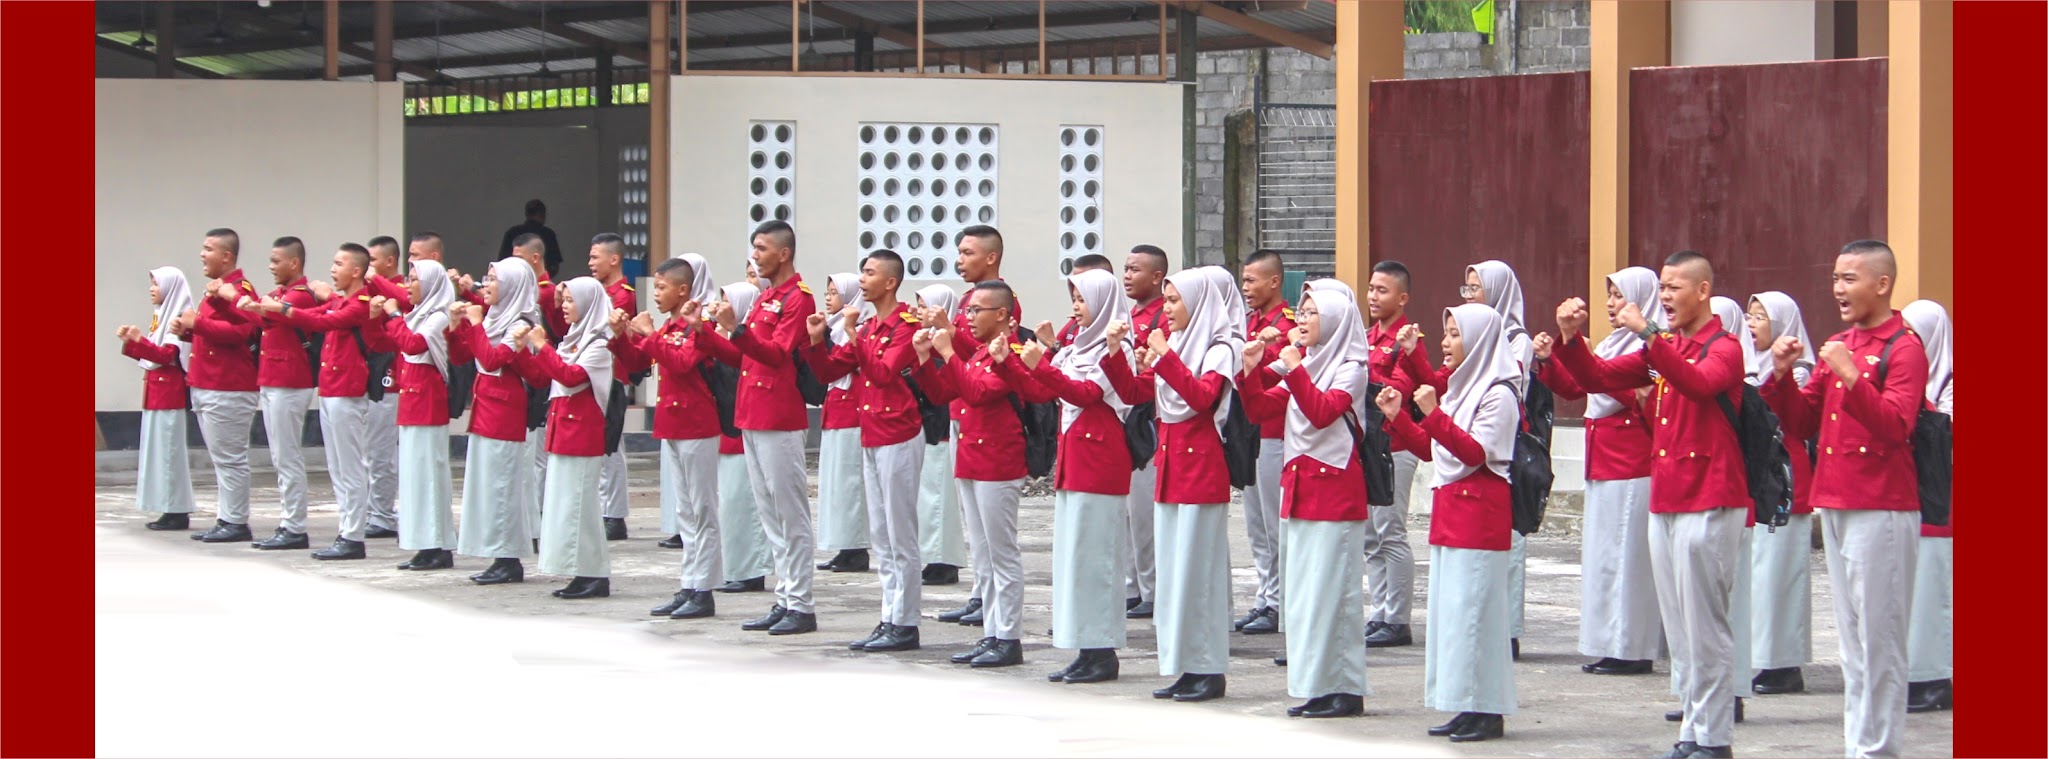 Foto SMA  Taruna Muhammadiyah Gunungpring, Kab. Magelang